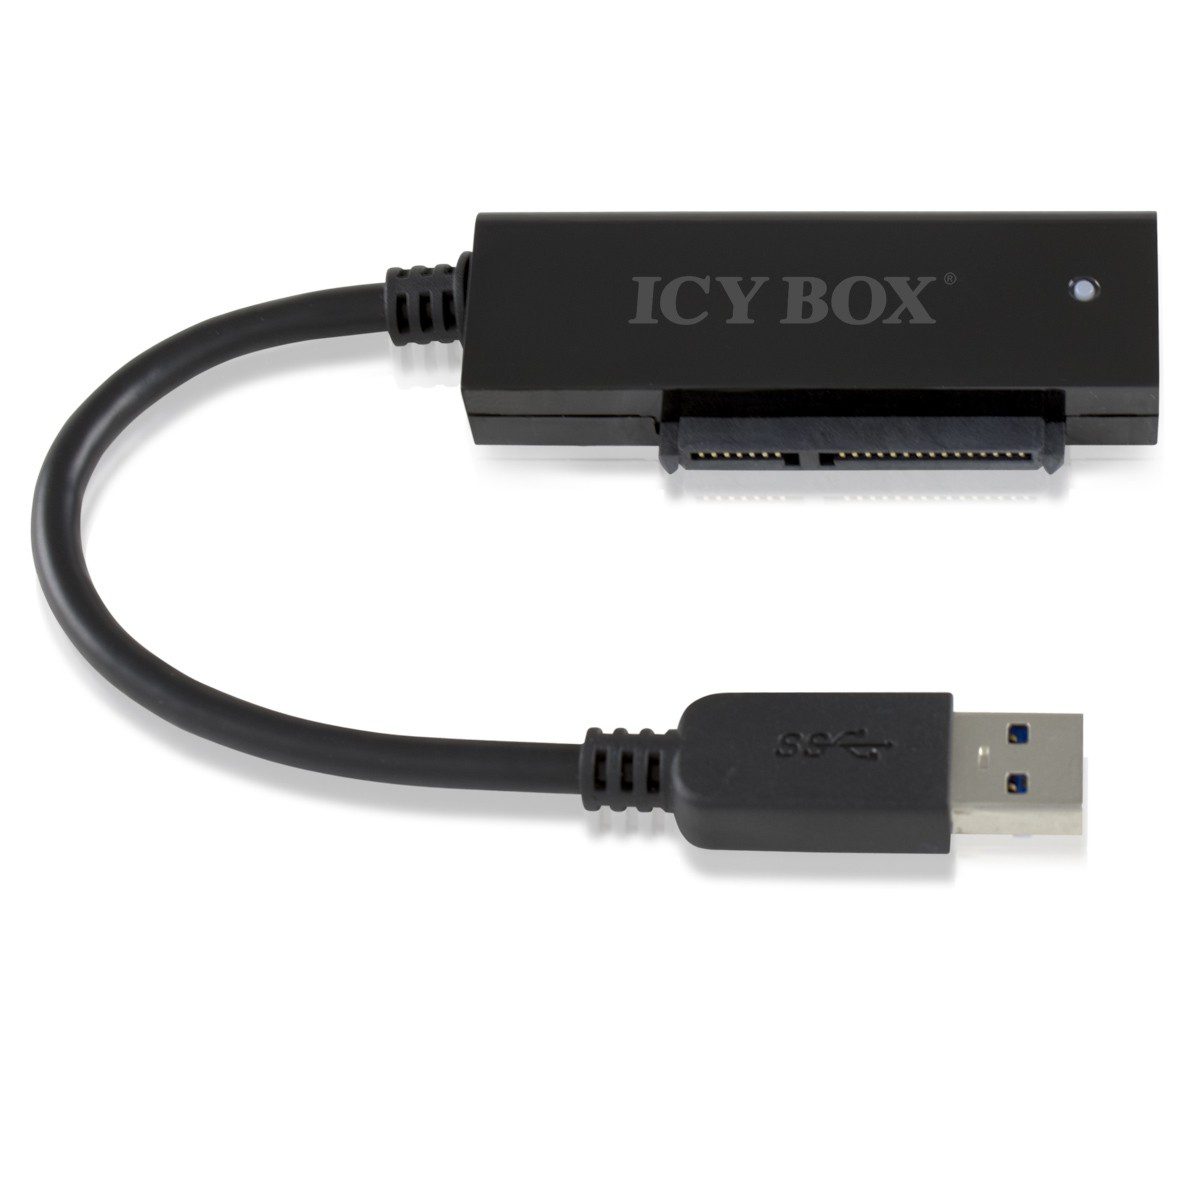 ICY BOX SATA to USB 3.0 Adapter